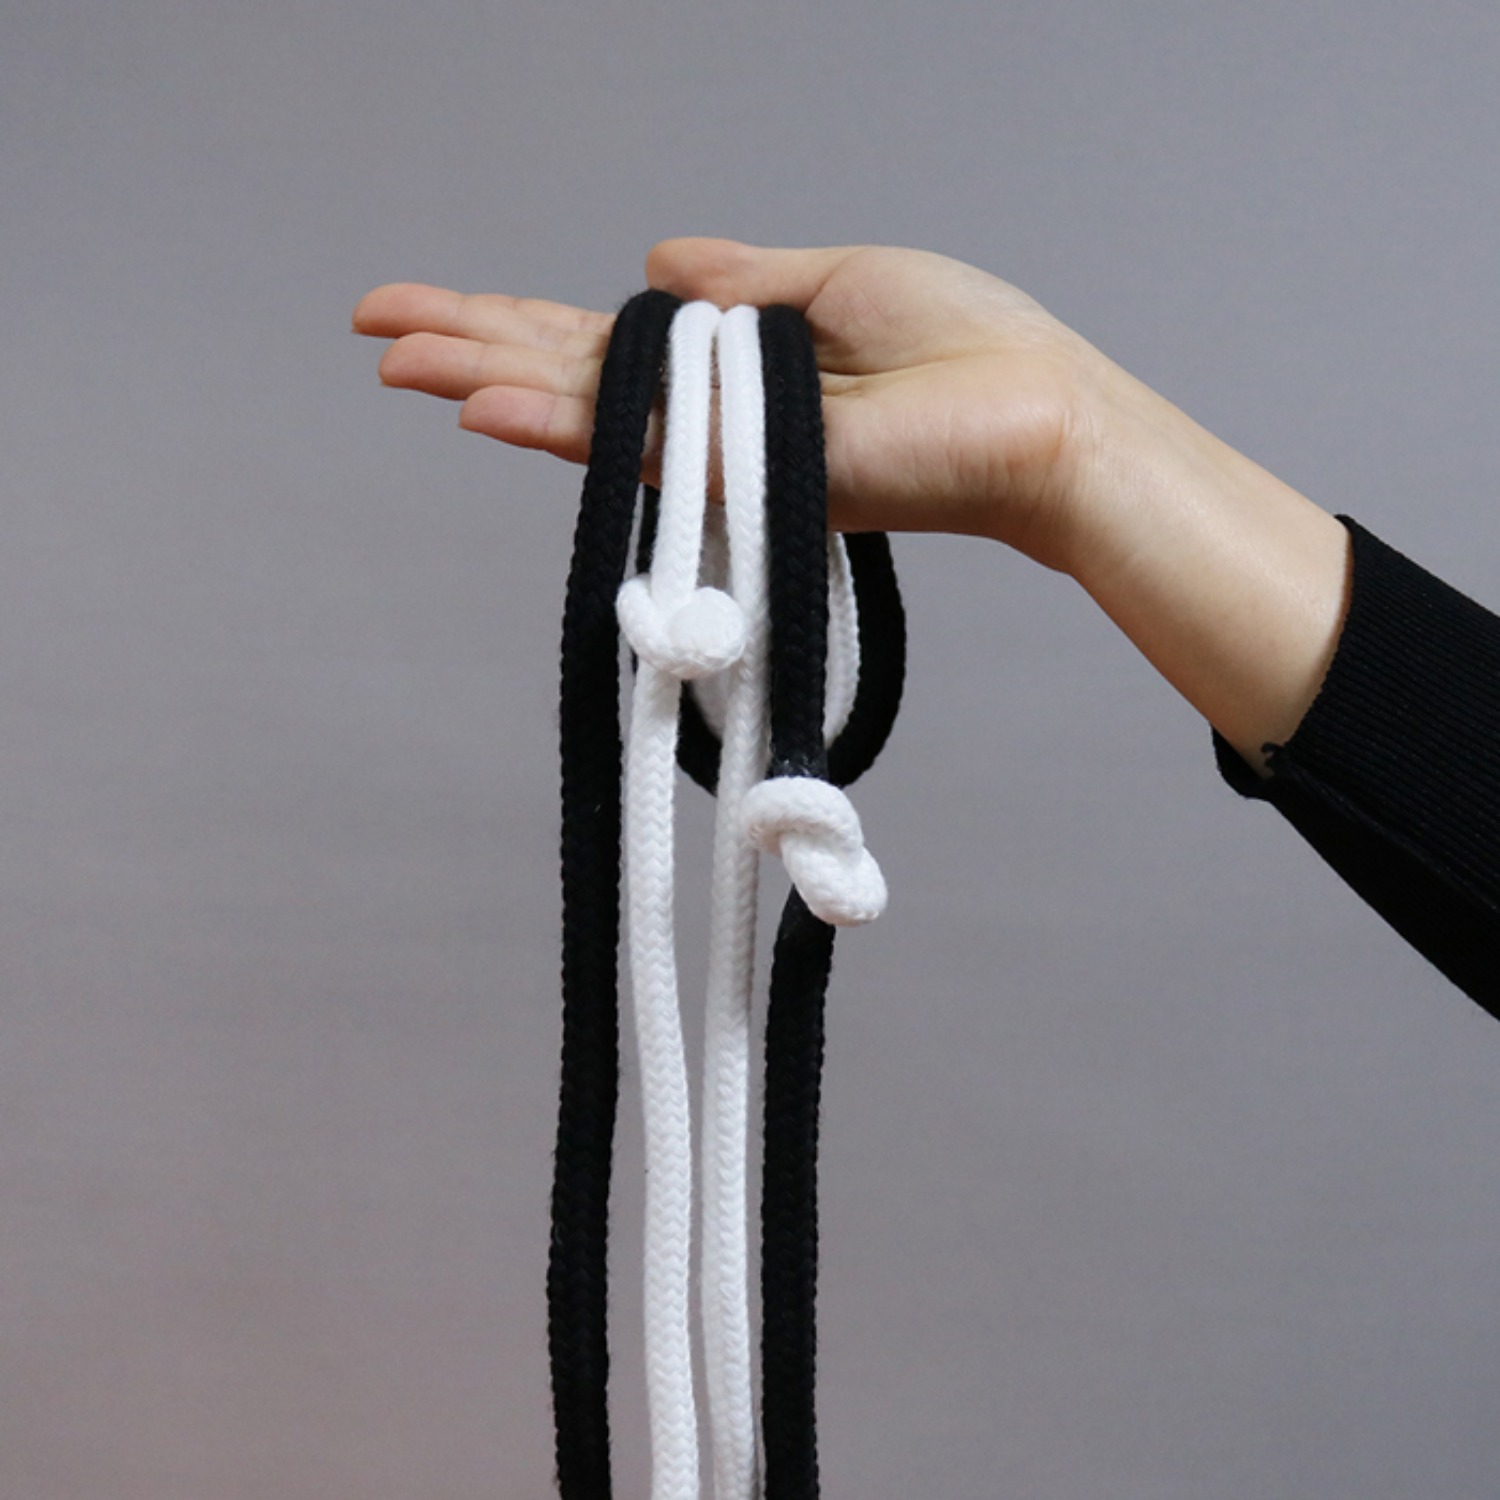 [블랙 앤 화이트로프] 흰색로프에 만들어진 매듭을 검은색로프로 순간이동 시킵니다.